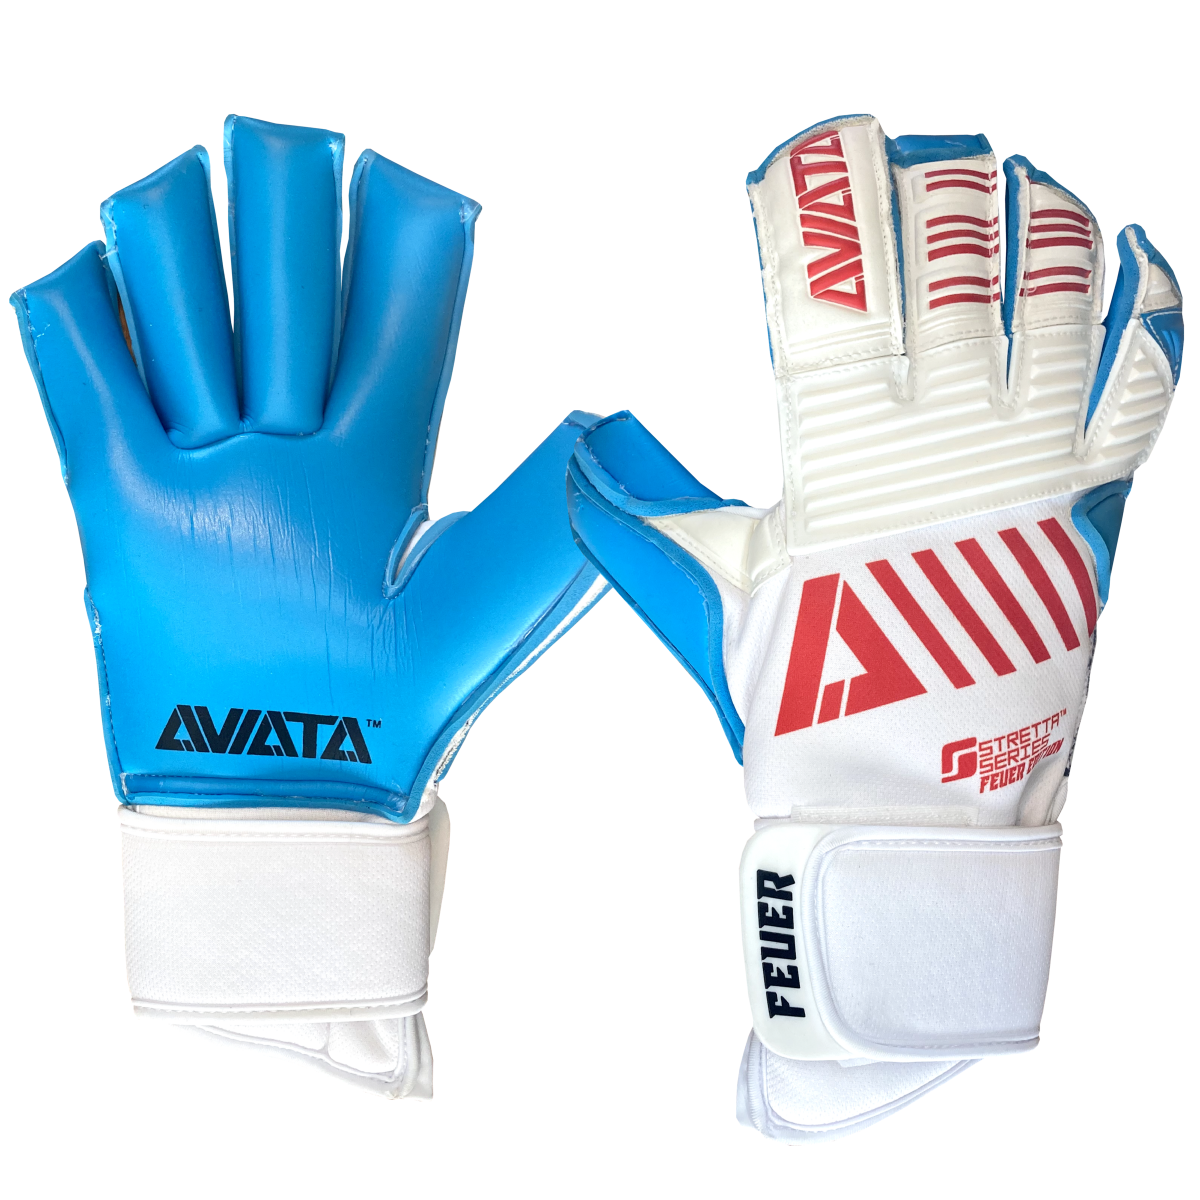 Aviata Stretta Feuer USA V7 Goalkeeper Gloves - White-Red-Blue (Set)